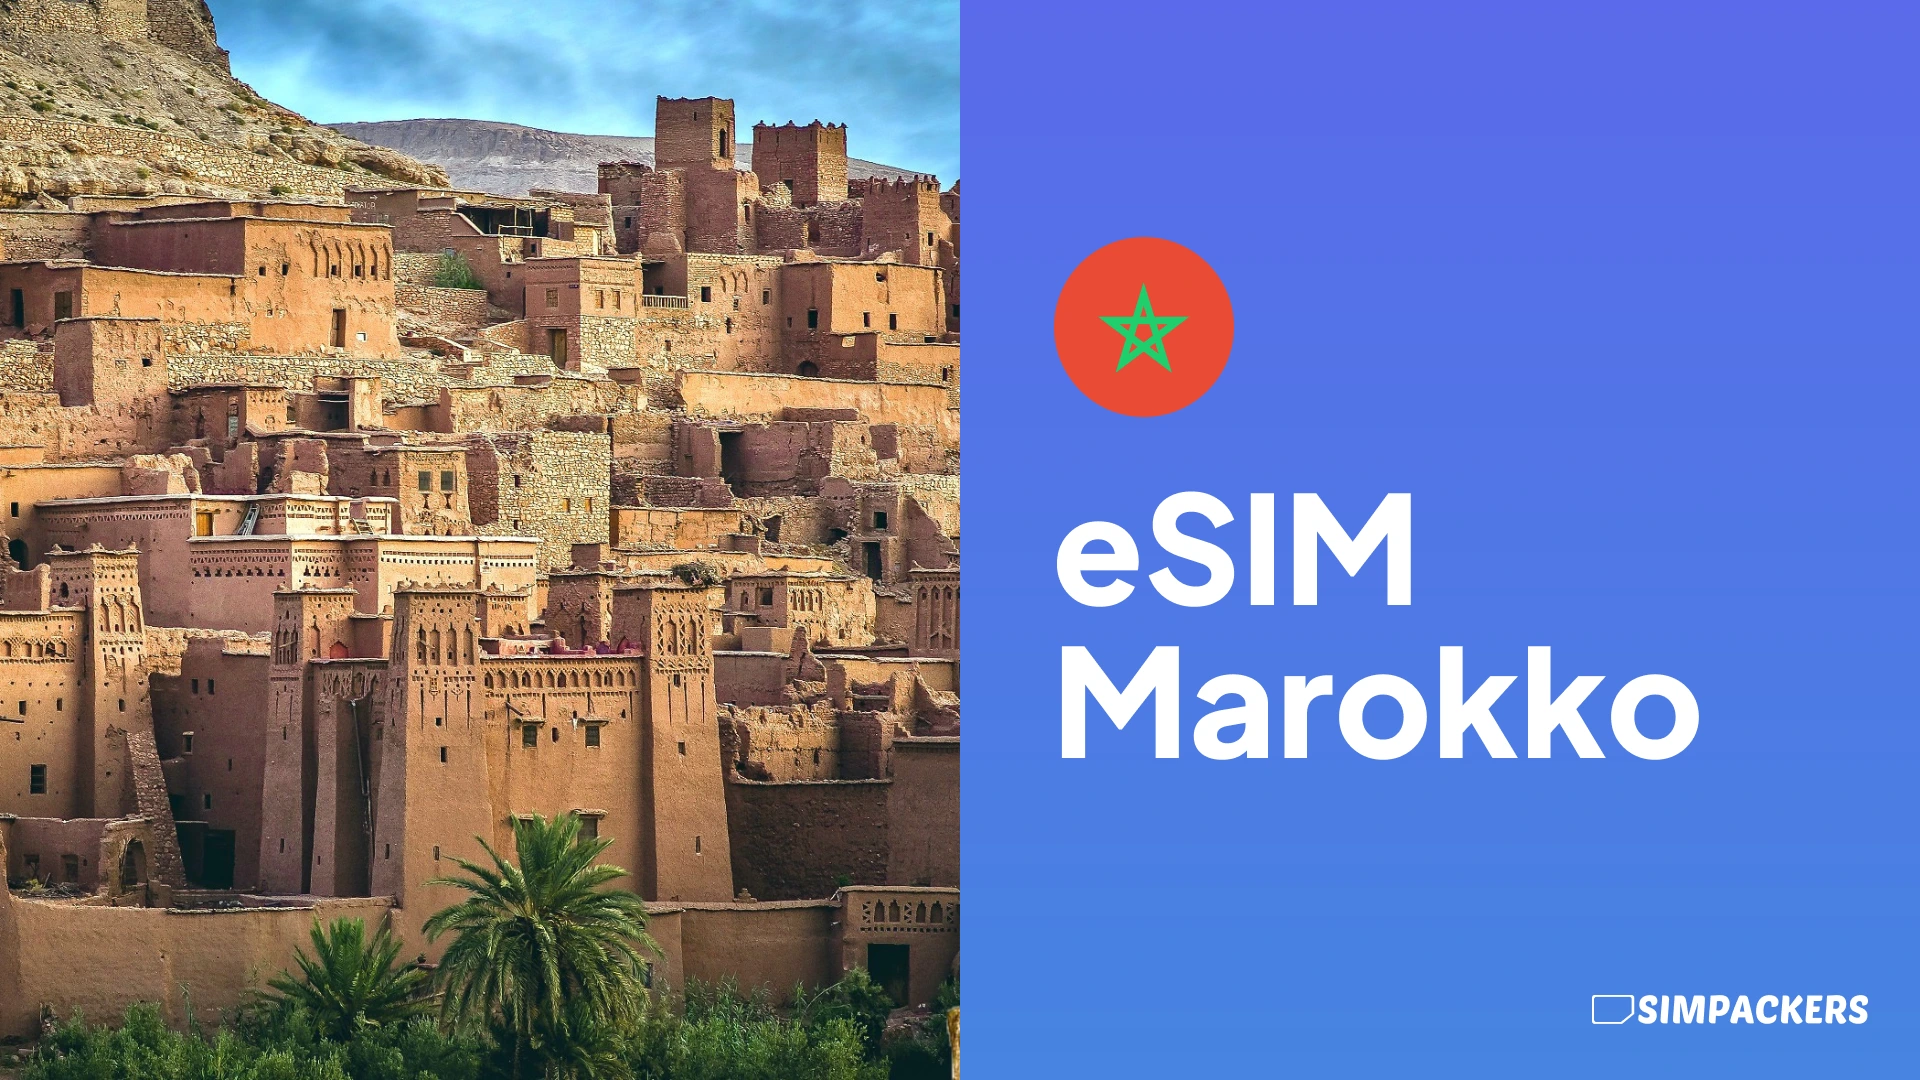 DE/FEATURED_IMAGES/esim-marokko.webp